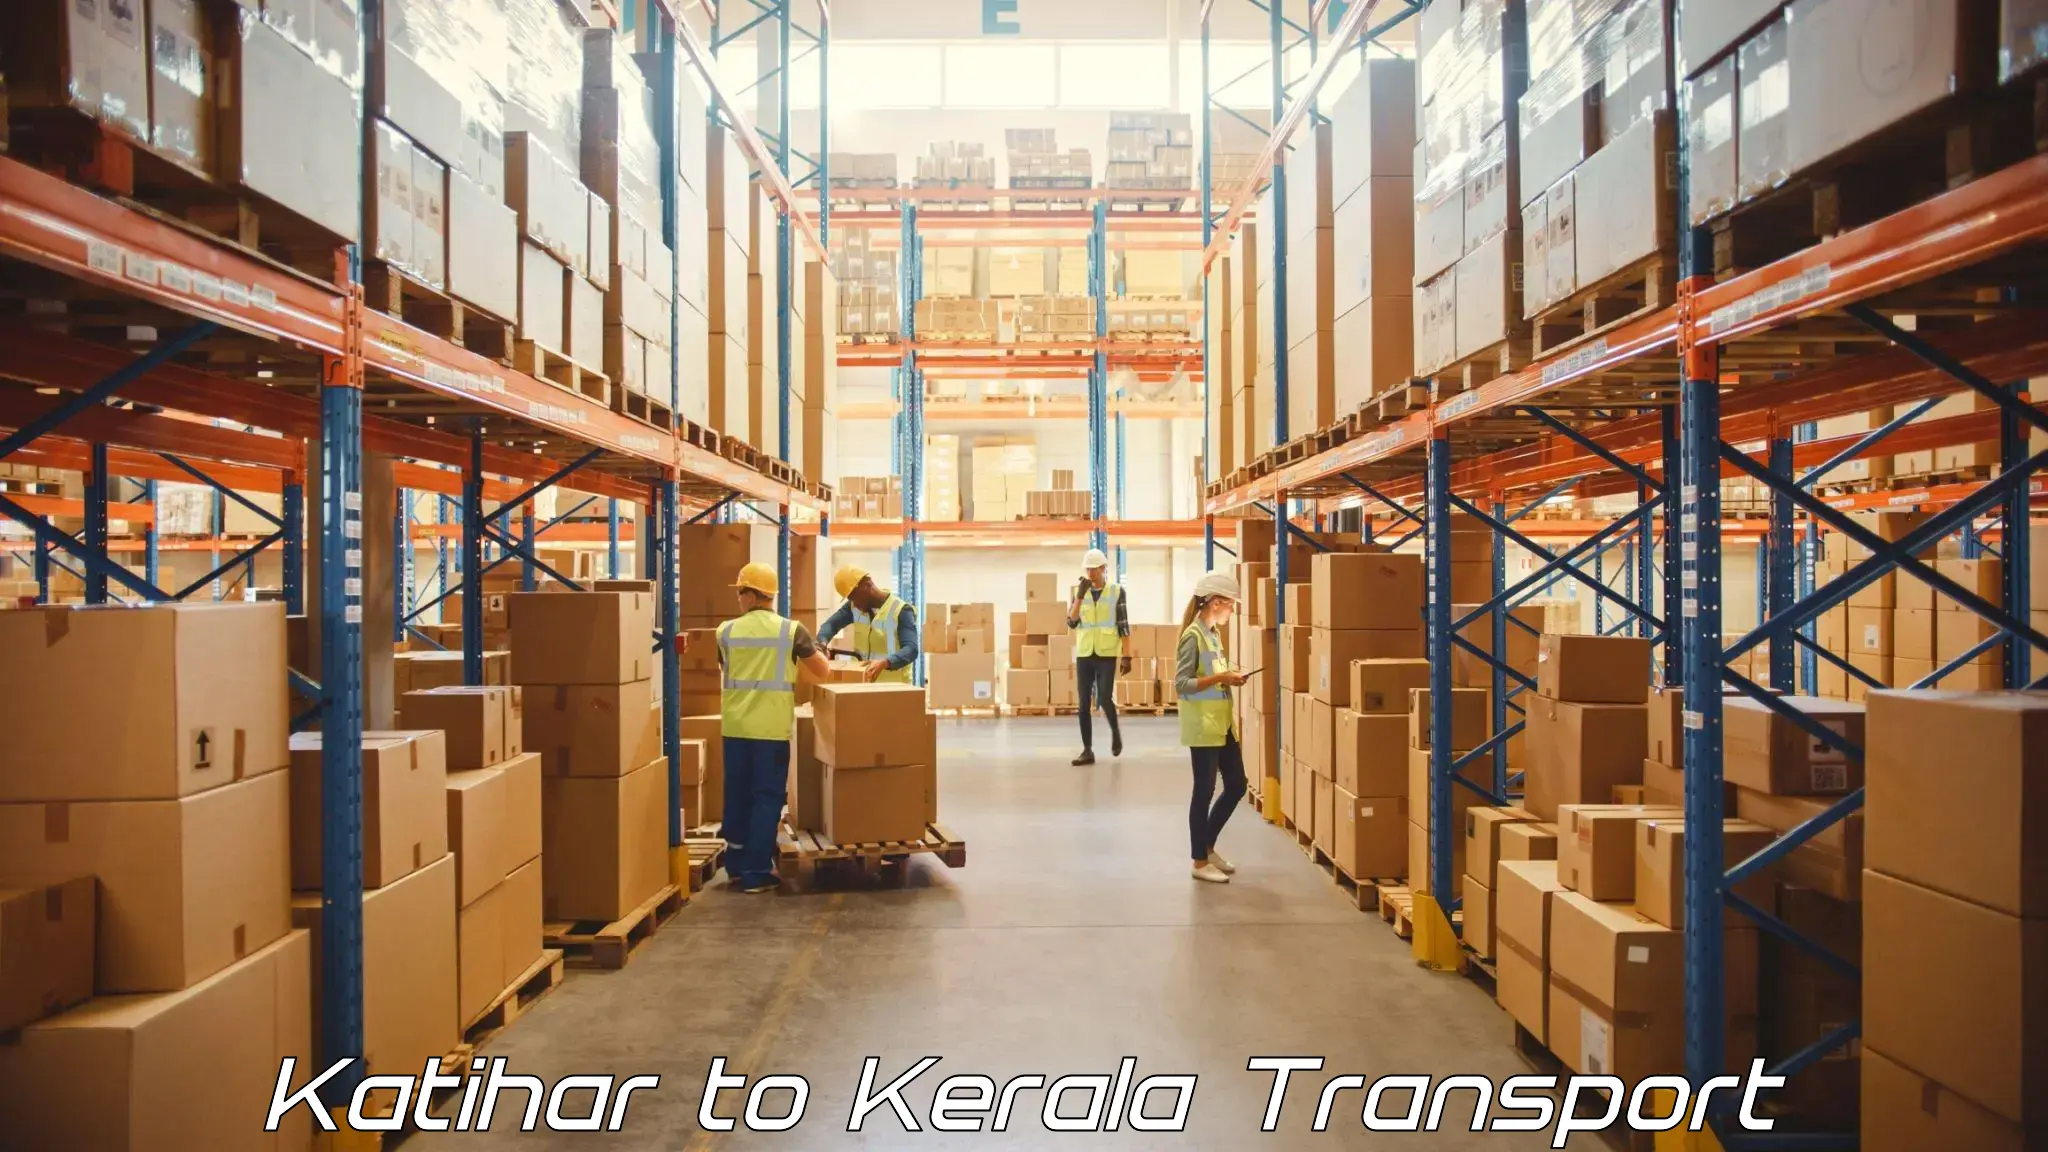 Luggage transport services Katihar to Mahatma Gandhi University Kottayam